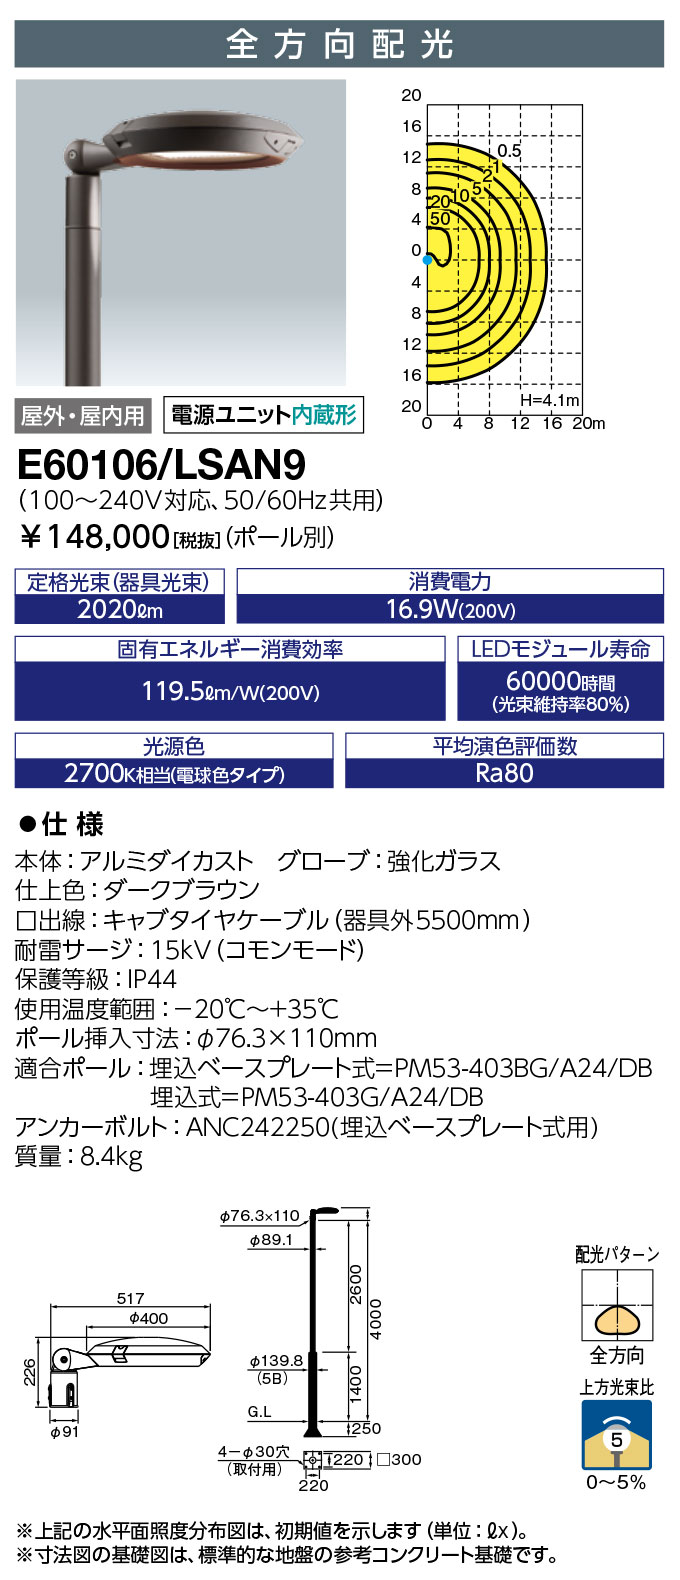 岩崎電気 E60106/LSAN9-